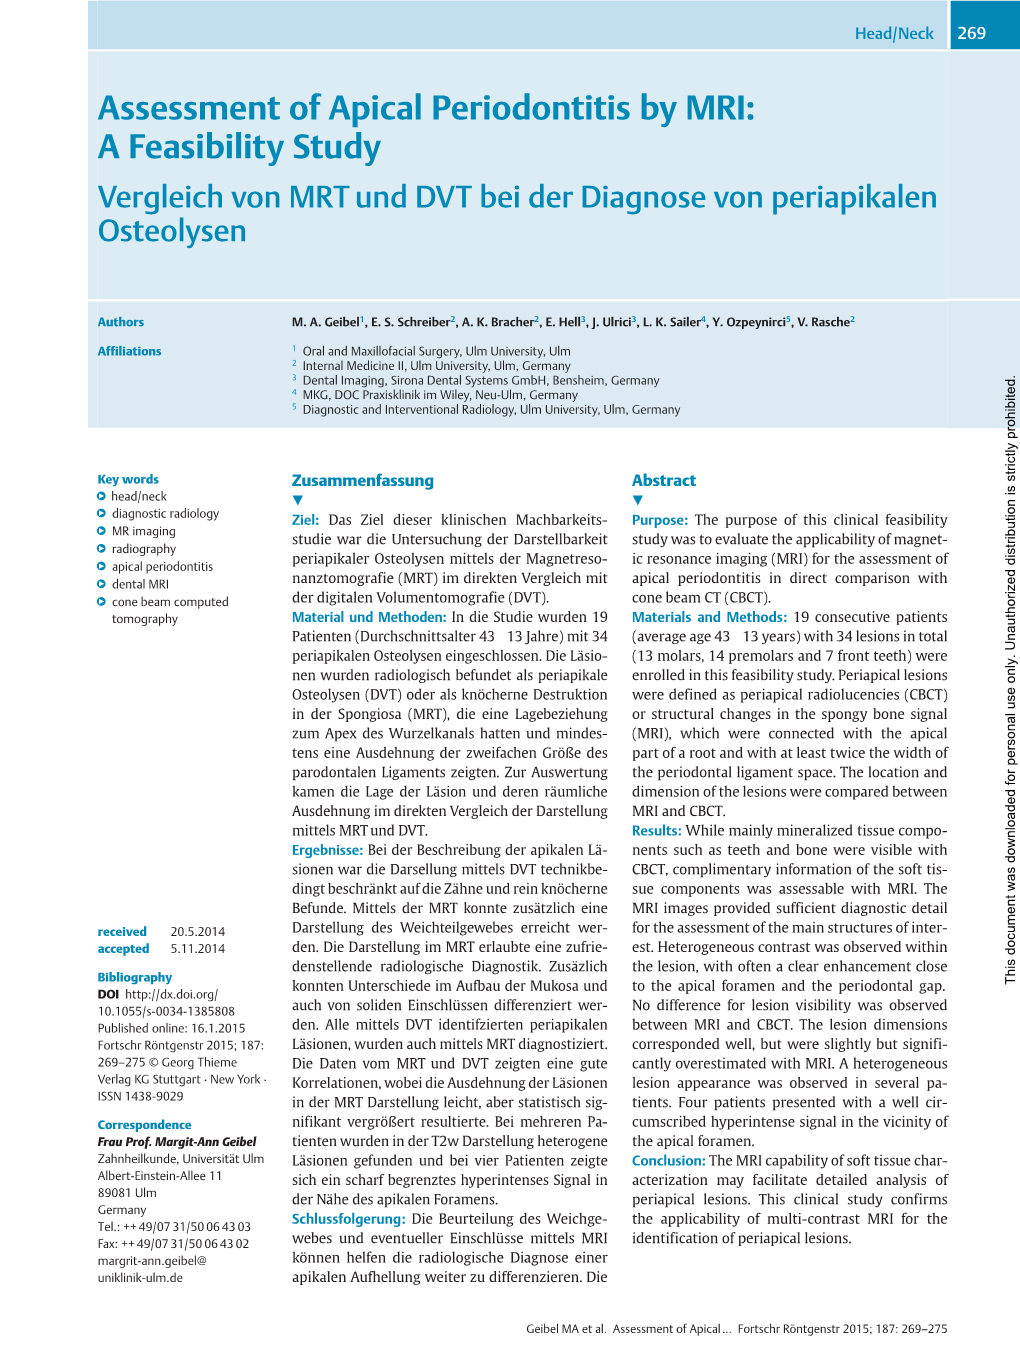 Assessment of Apical Periodontitis by MRI: a Feasibility Study Vergleich Von MRT Und DVT Bei Der Diagnose Von Periapikalen Osteolysen